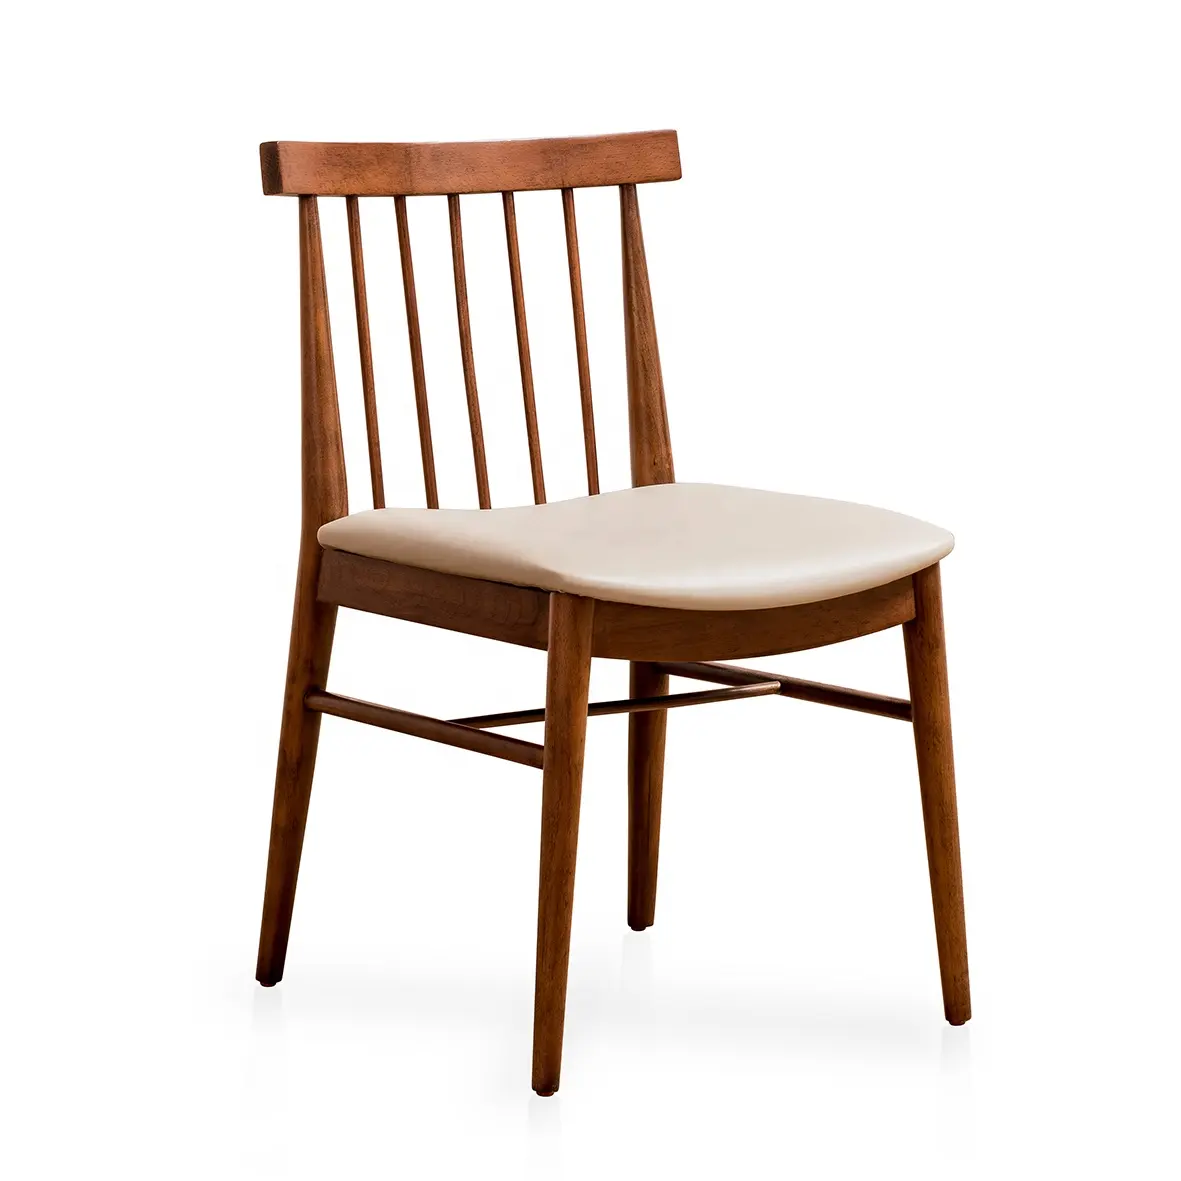 Оптовая продажа с завода, стул для ресторана, прочный обеденный стул из твердой древесины, грецкого ореха